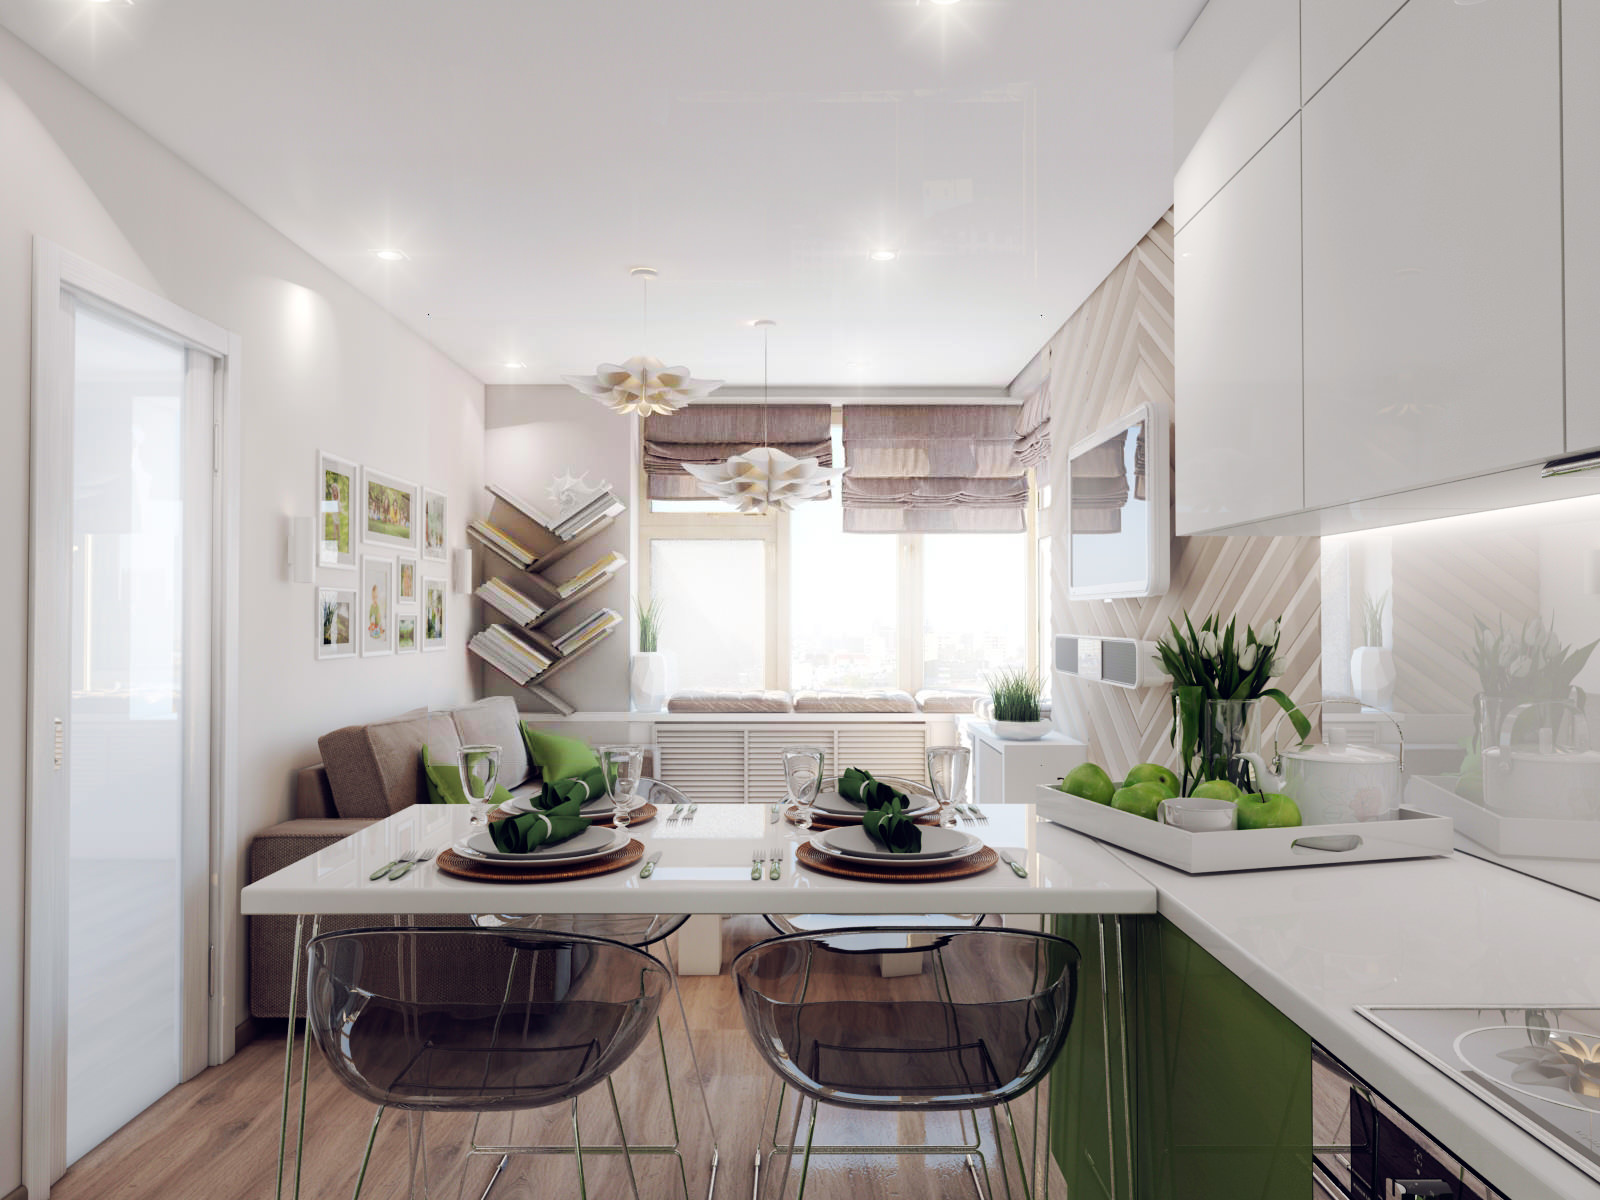 Кухня 14 кв. м. — 150 реальных фото готовых идей планировки и зонирования кухни. примеры современного дизайна и новинки